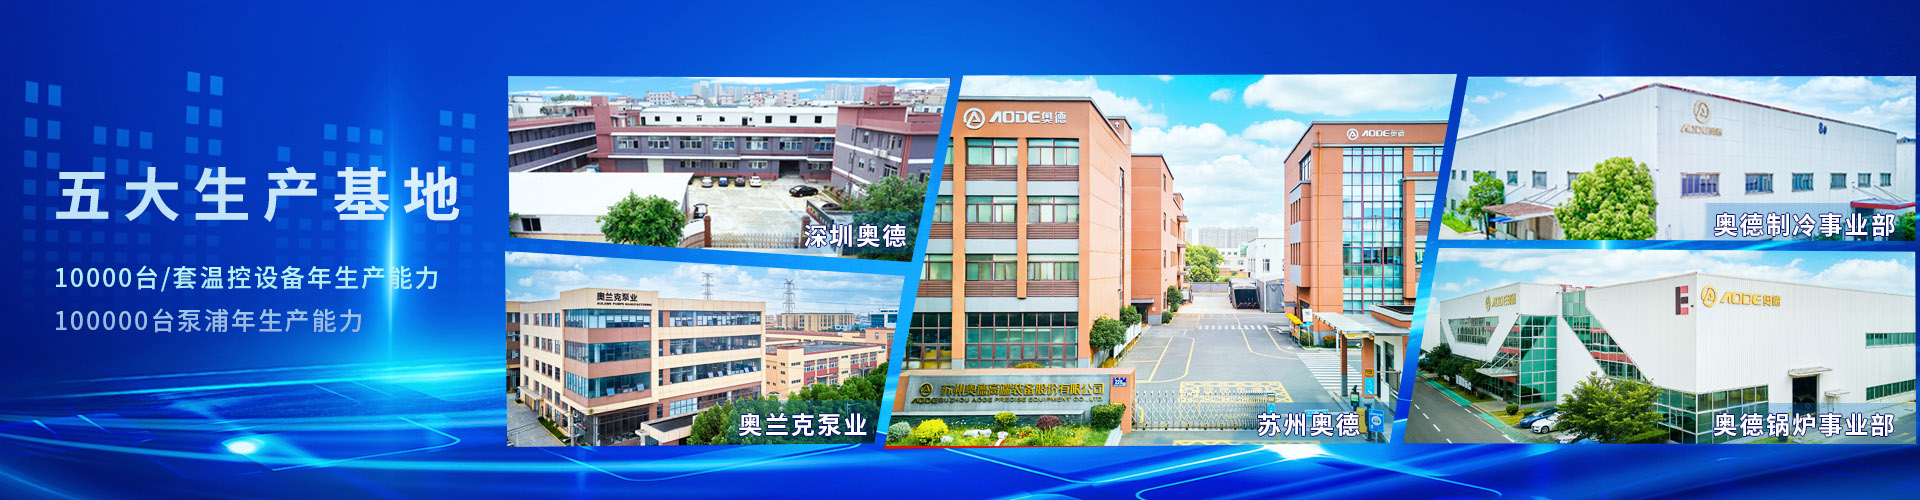 深圳市yd12300云顶线路机械有限公司五大生产基地-专注高端工业温度控制